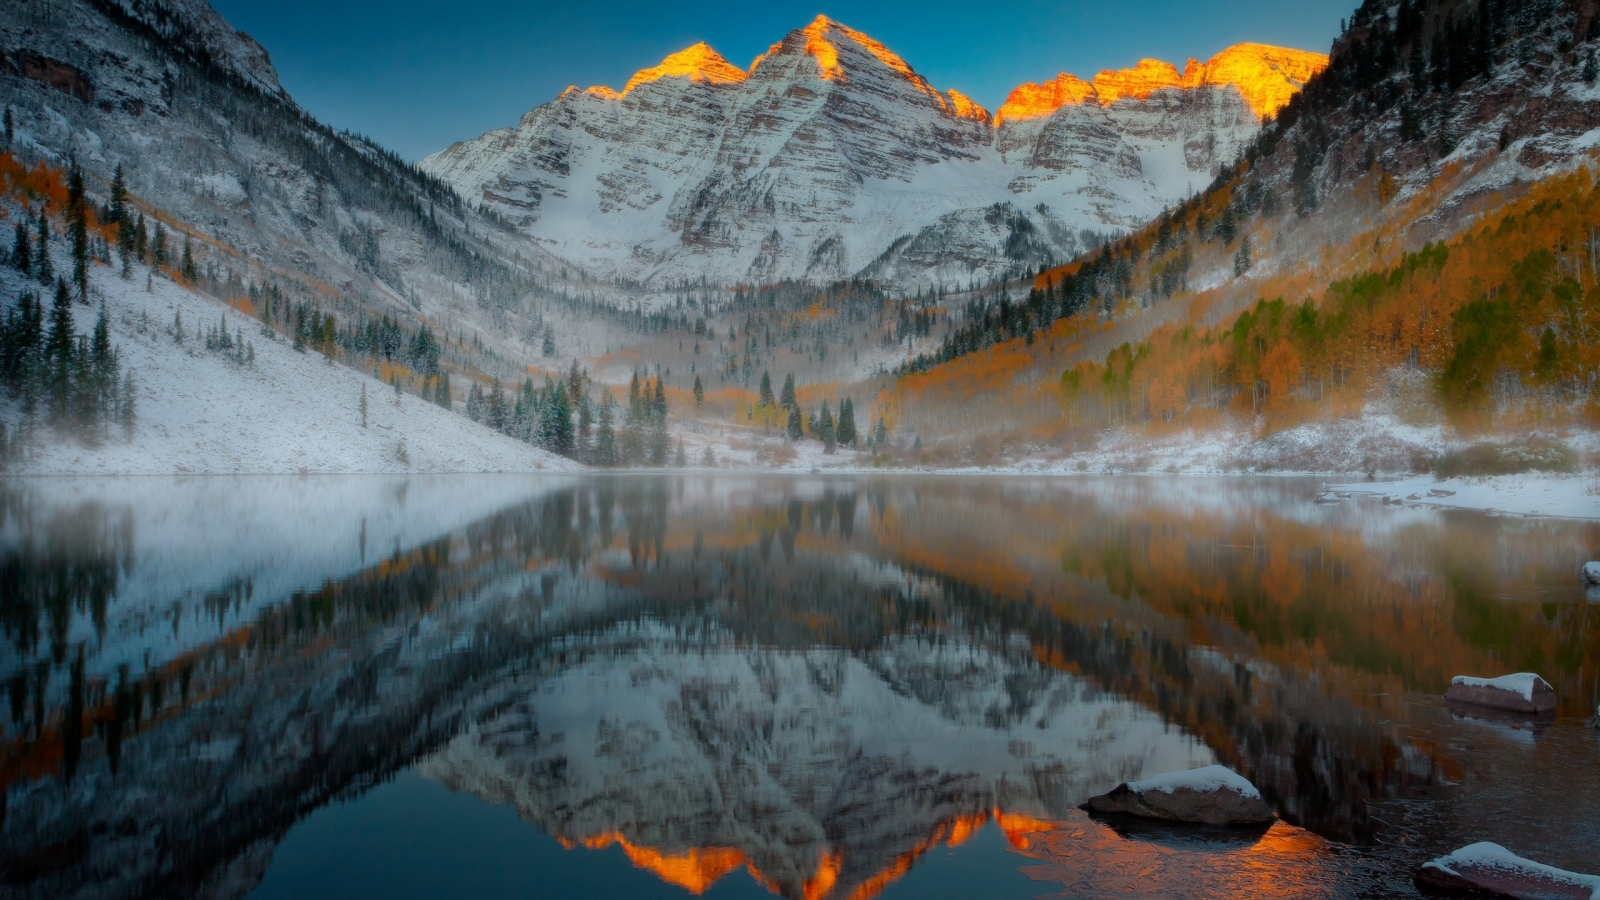 Aspen Mountain Colorado for 1600 x 900 HDTV resolution